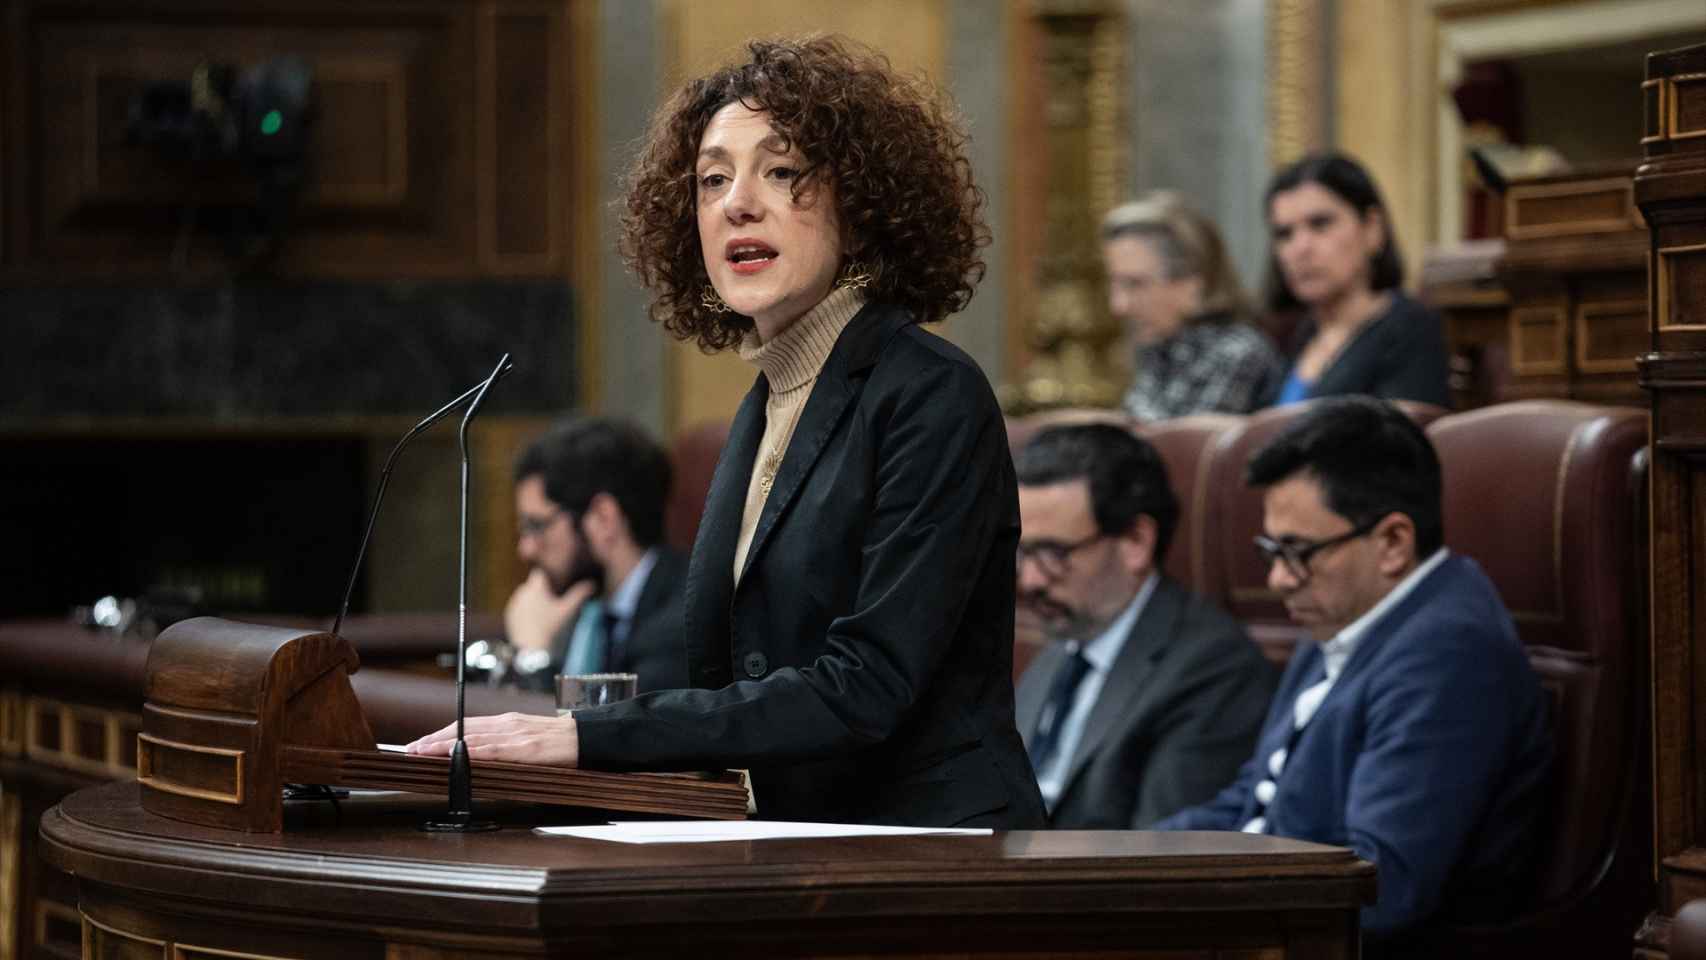 La portavoz de En Comú Podem, Aina Vidal, interviene durante una sesión plenaria, en el Congreso de los Diputados